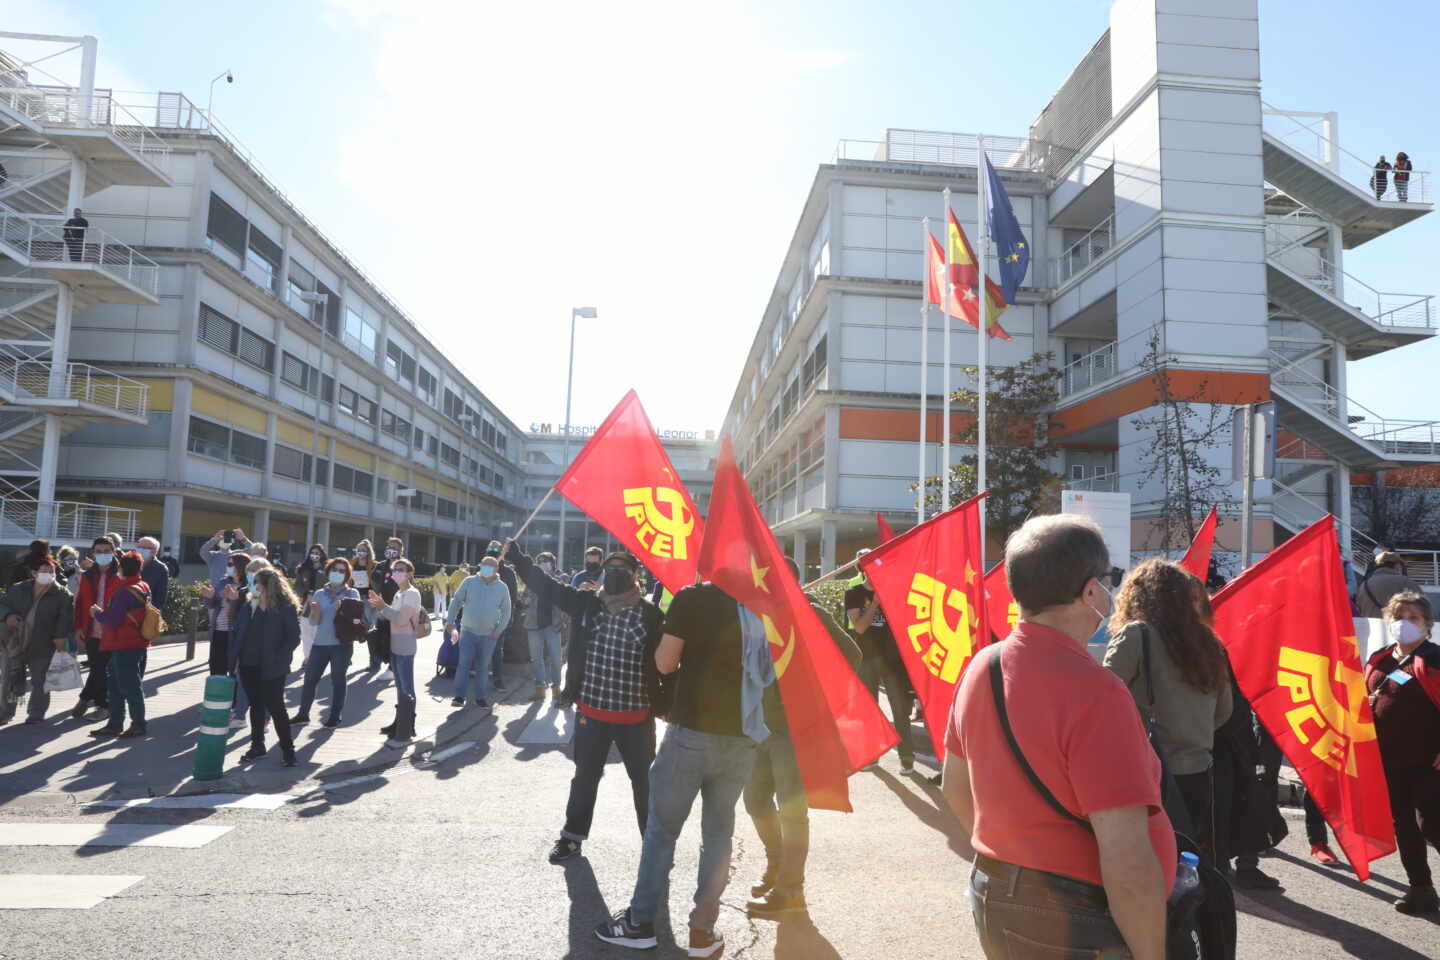 Banderas del PCE en una concentración de la plataforma Vallekas por lo Público.